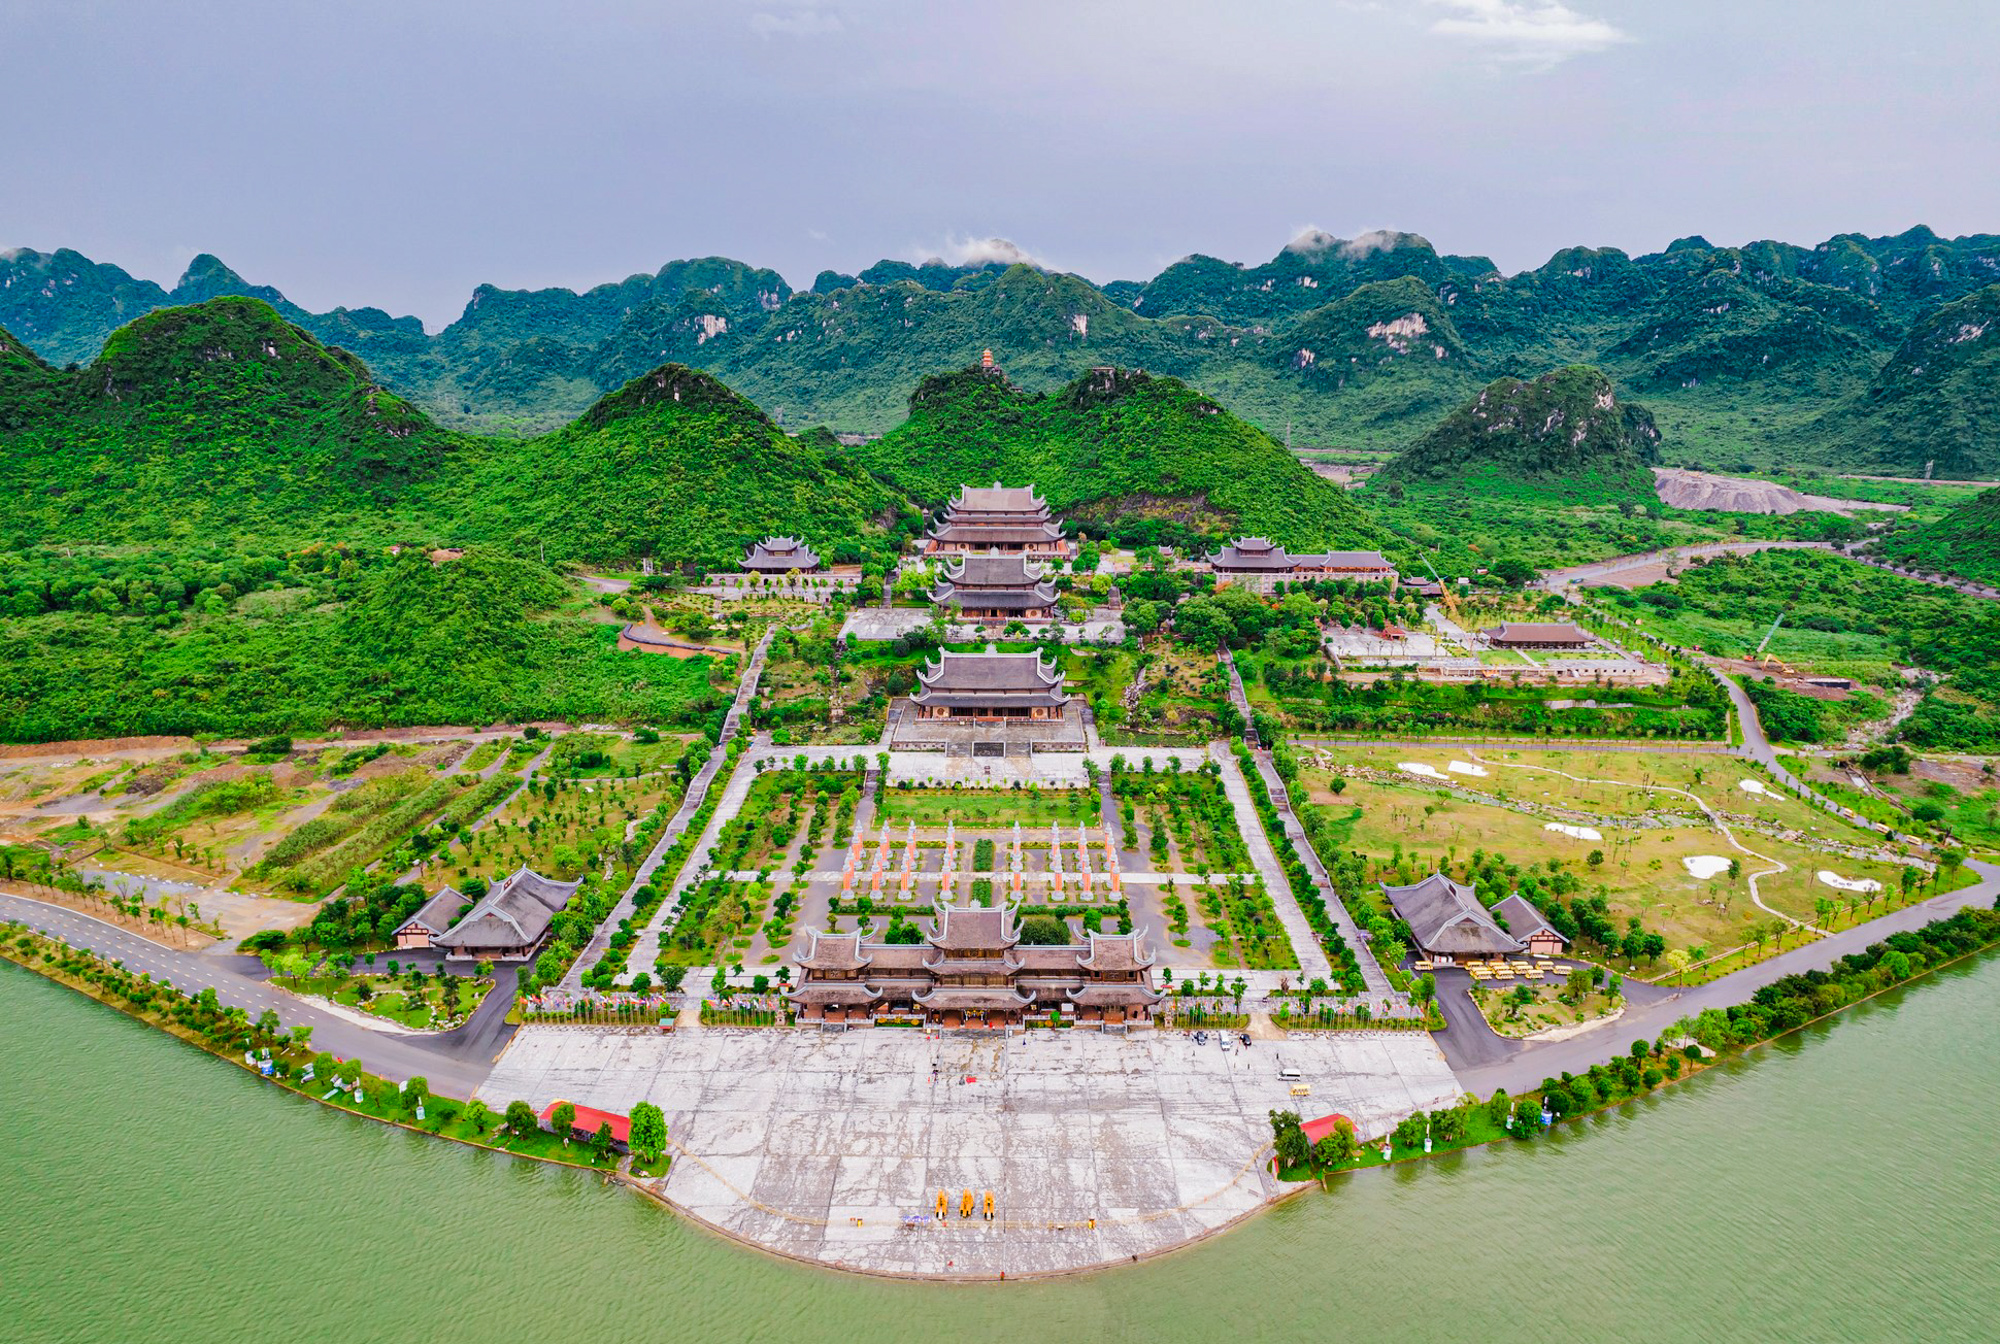 Ngôi chùa rộng gấp 10 lần quận Hoàn Kiếm, xây nửa thế kỷ mới xong - Ảnh 1.